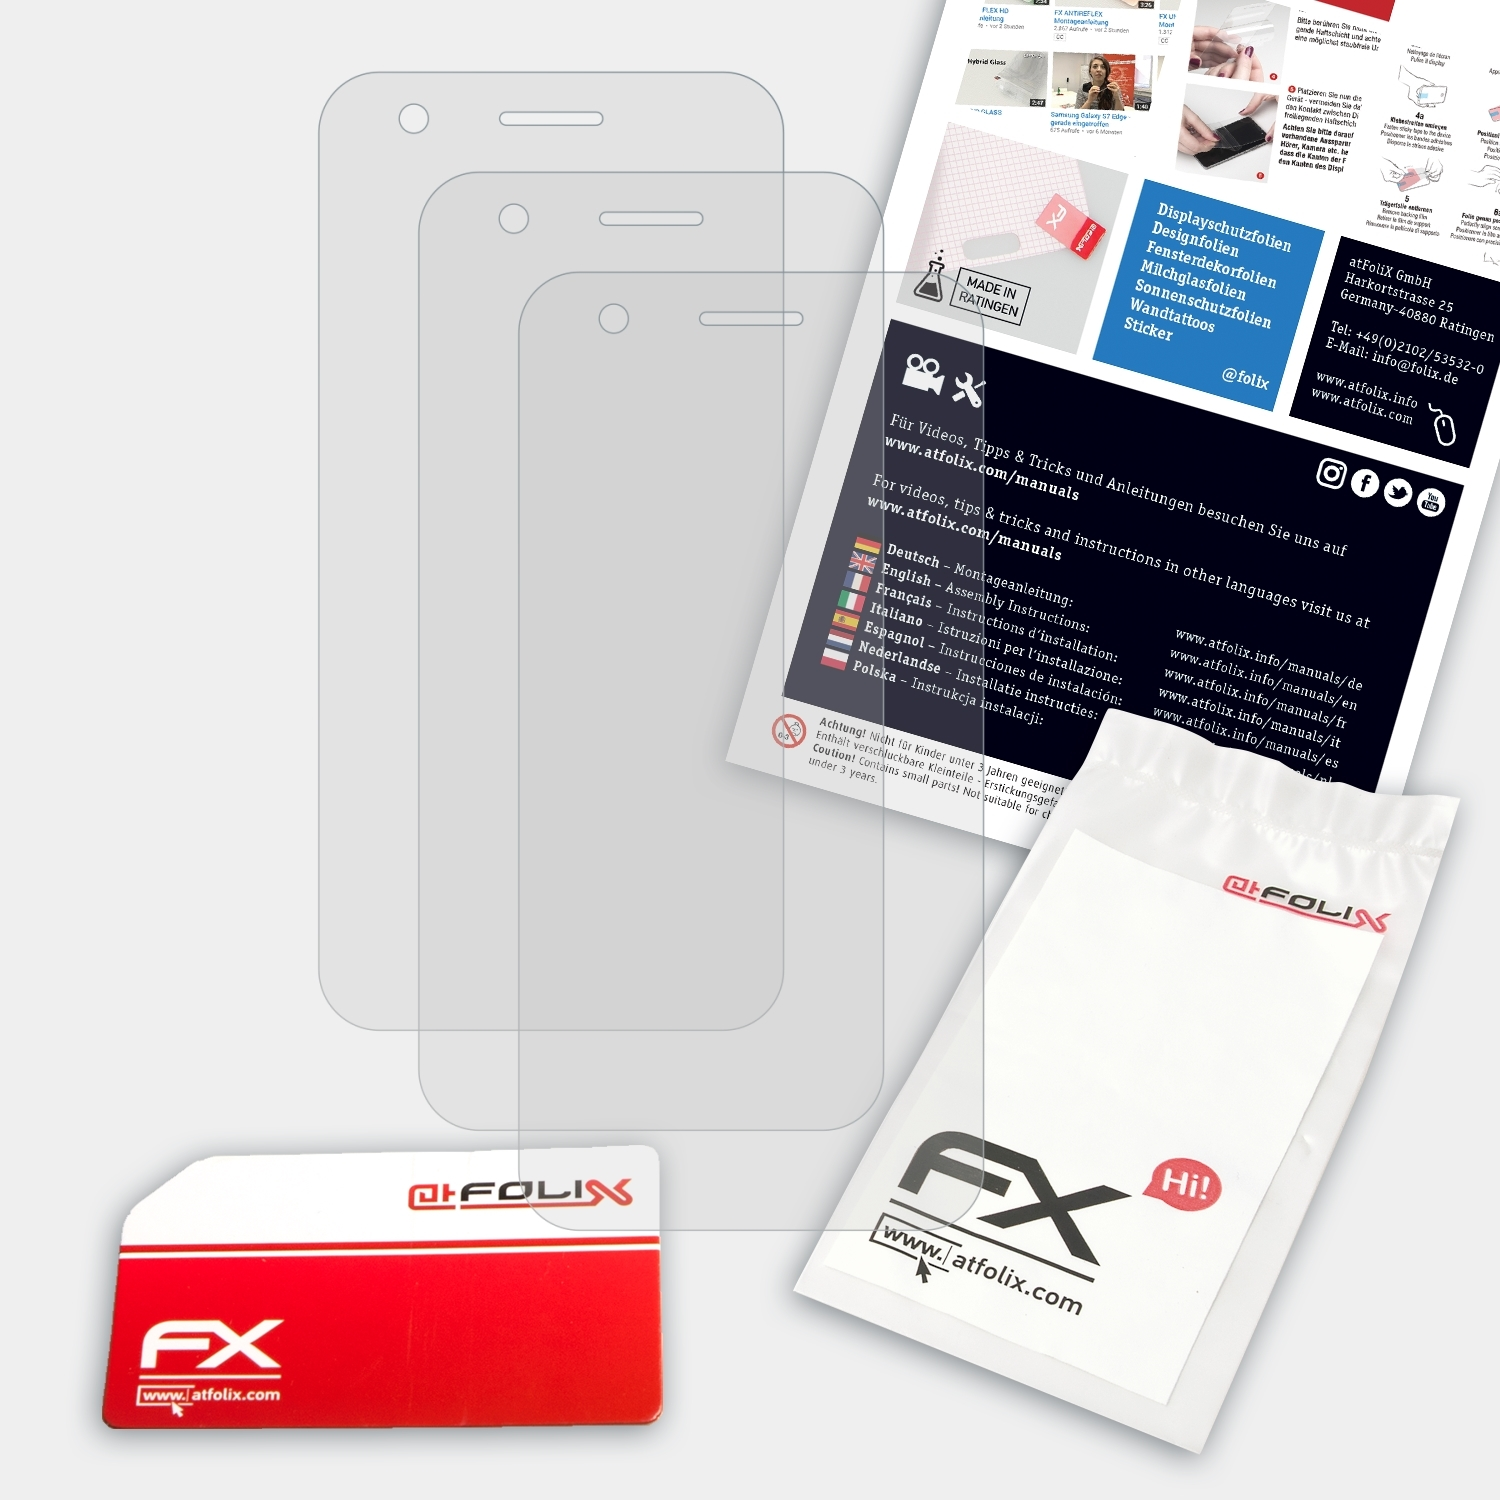 ATFOLIX 3x FX-Antireflex Displayschutz(für Vodafone Smart E8)